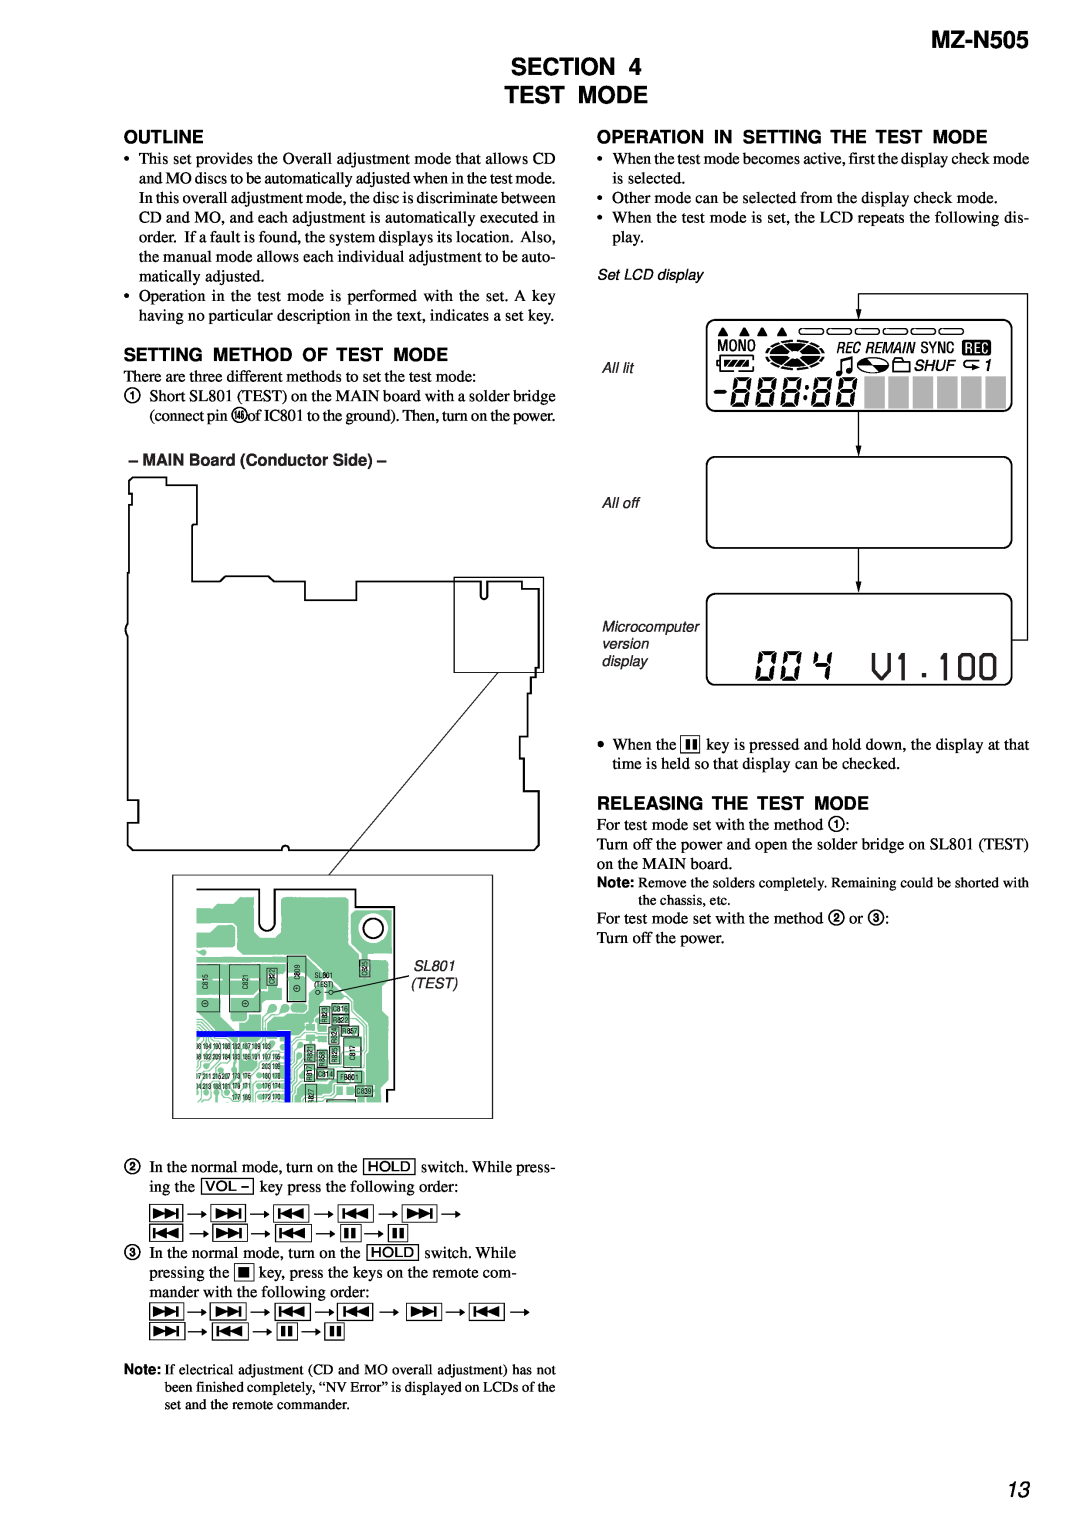 Sony V1.100, MZ-N505 SECTION TEST MODE, Outline, Setting Method Of Test Mode, Operation In Setting The Test Mode 